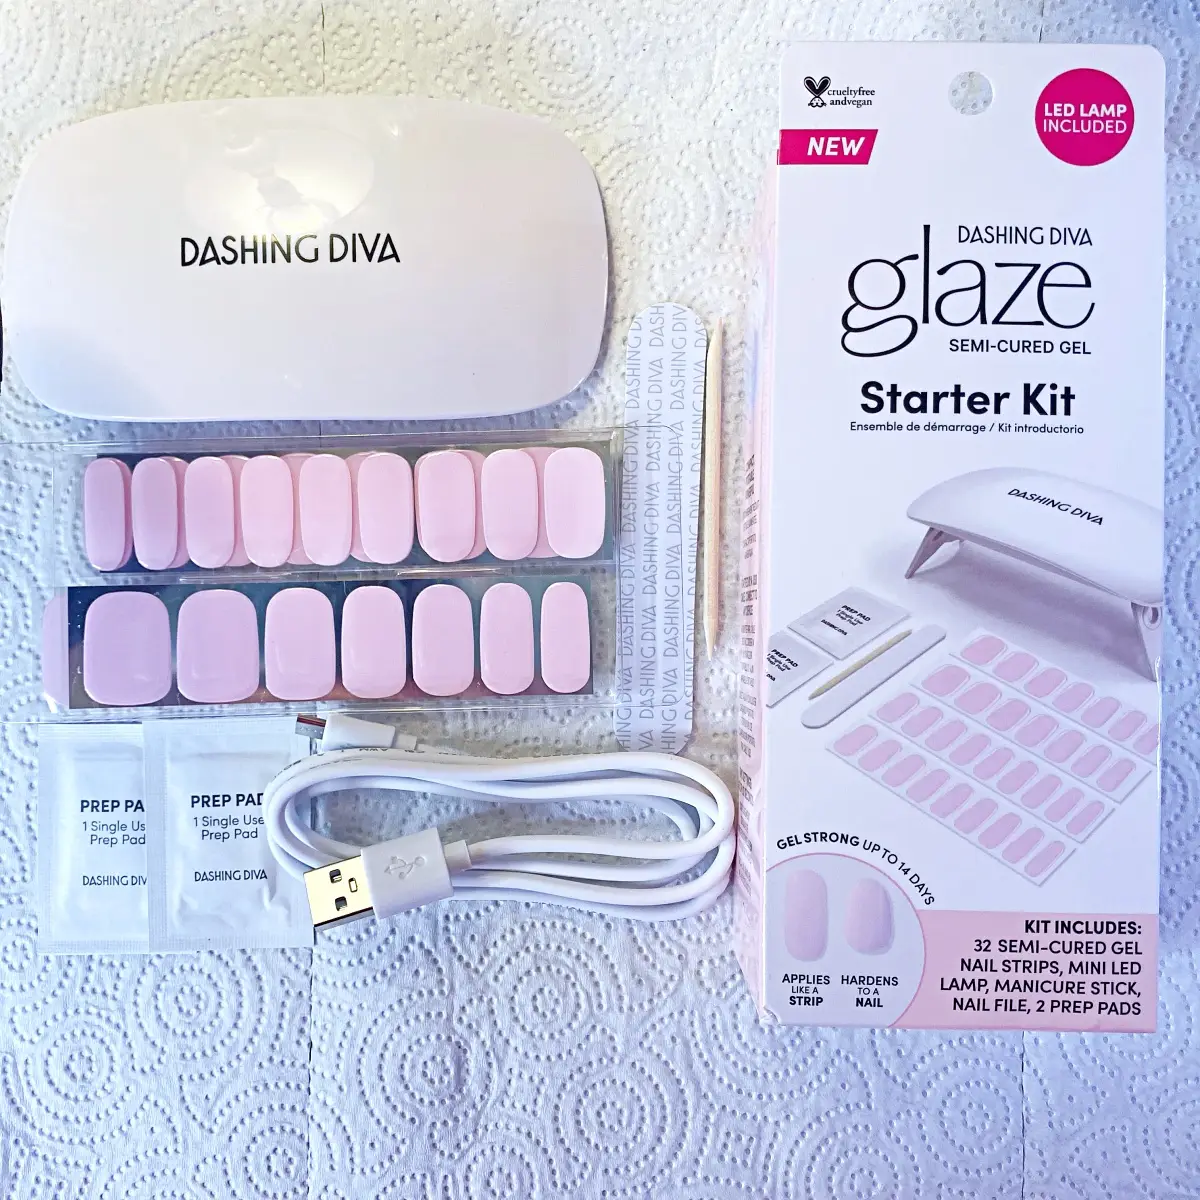 Dashing Diva Glaze starter kit